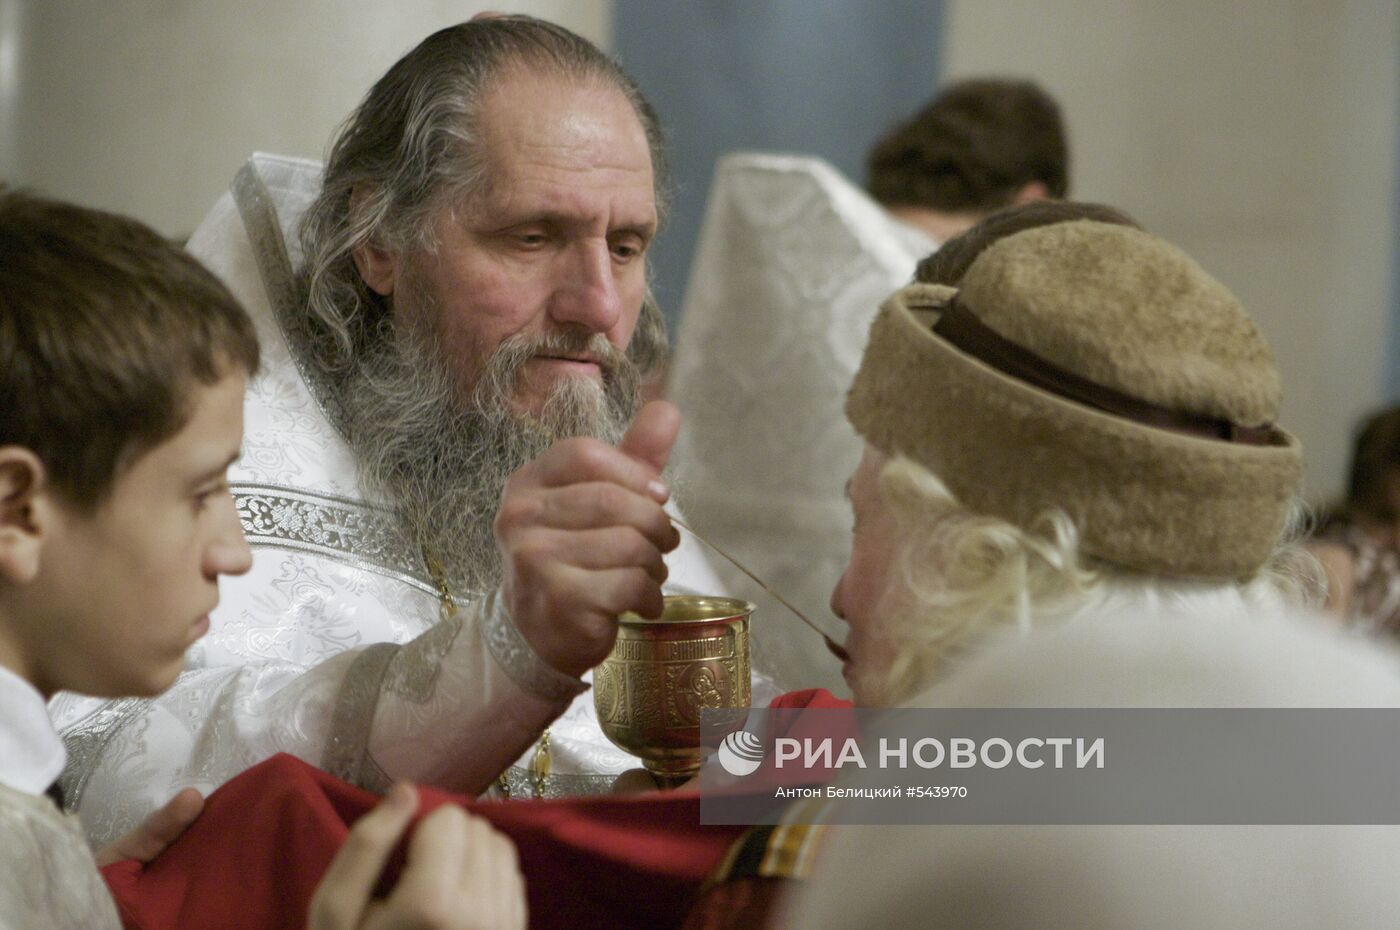 Празднование Рождества Христова в Москве